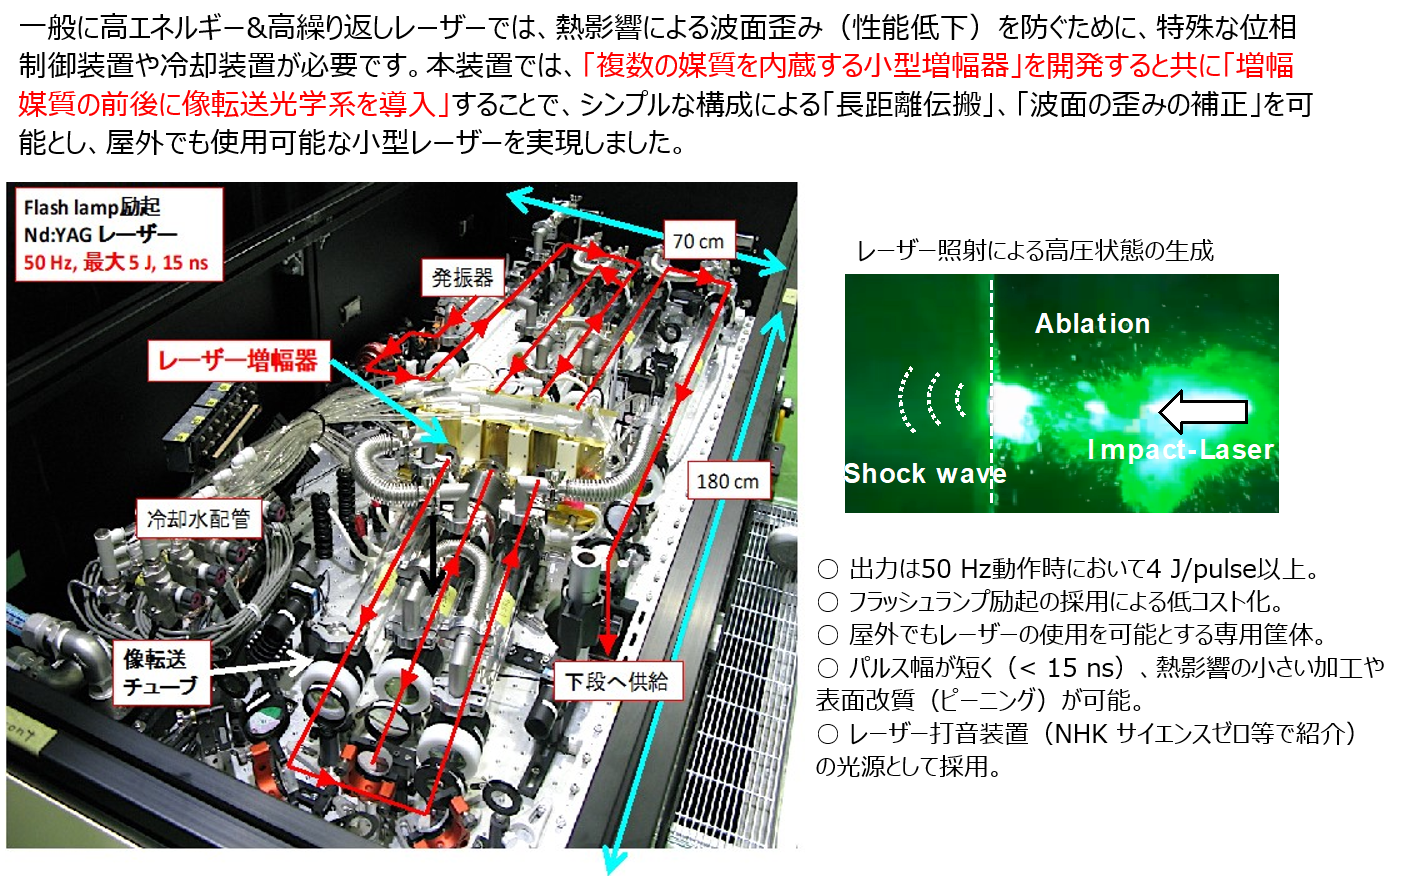 一般に高エネルギー&高繰り返しレーザーでは、熱影響による波面歪み（性能低下）を防ぐために、特殊な位相制御装置や冷却装置が必要です。本装置では、「複数の媒質を内蔵する小型増幅器」を開発すると共に「増幅媒質の前後に像転送光学系を導入」することで、シンプルな構成による「長距離伝搬」、「波面の歪みの補正」を可能とし、屋外でも使用可能な小型レーザーを実現しました。 Flash lamp励起 Nd:YAGレーザー 50Hz, 最大5J, 15ns レーザー増幅器 冷却水配管 像転送チューブ 発信器 70cm 180cm 下段へ供給 レーザー照射による高圧状態の生成 Ablation Shock wave Impact-Laser ○ 出力は50 Hz動作時において4 J/pulse以上。 ○ フラッシュランプ励起の採用による低コスト化。 ○ 屋外でもレーザーの使用を可能とする専用筐体。 ○ パルス幅が短く（< 15 ns）、熱影響の小さい加工や表面改質（ピーニング）が可能。 ○ レーザー打音装置（NHK サイエンスゼロ等で紹介）の光源として採用。